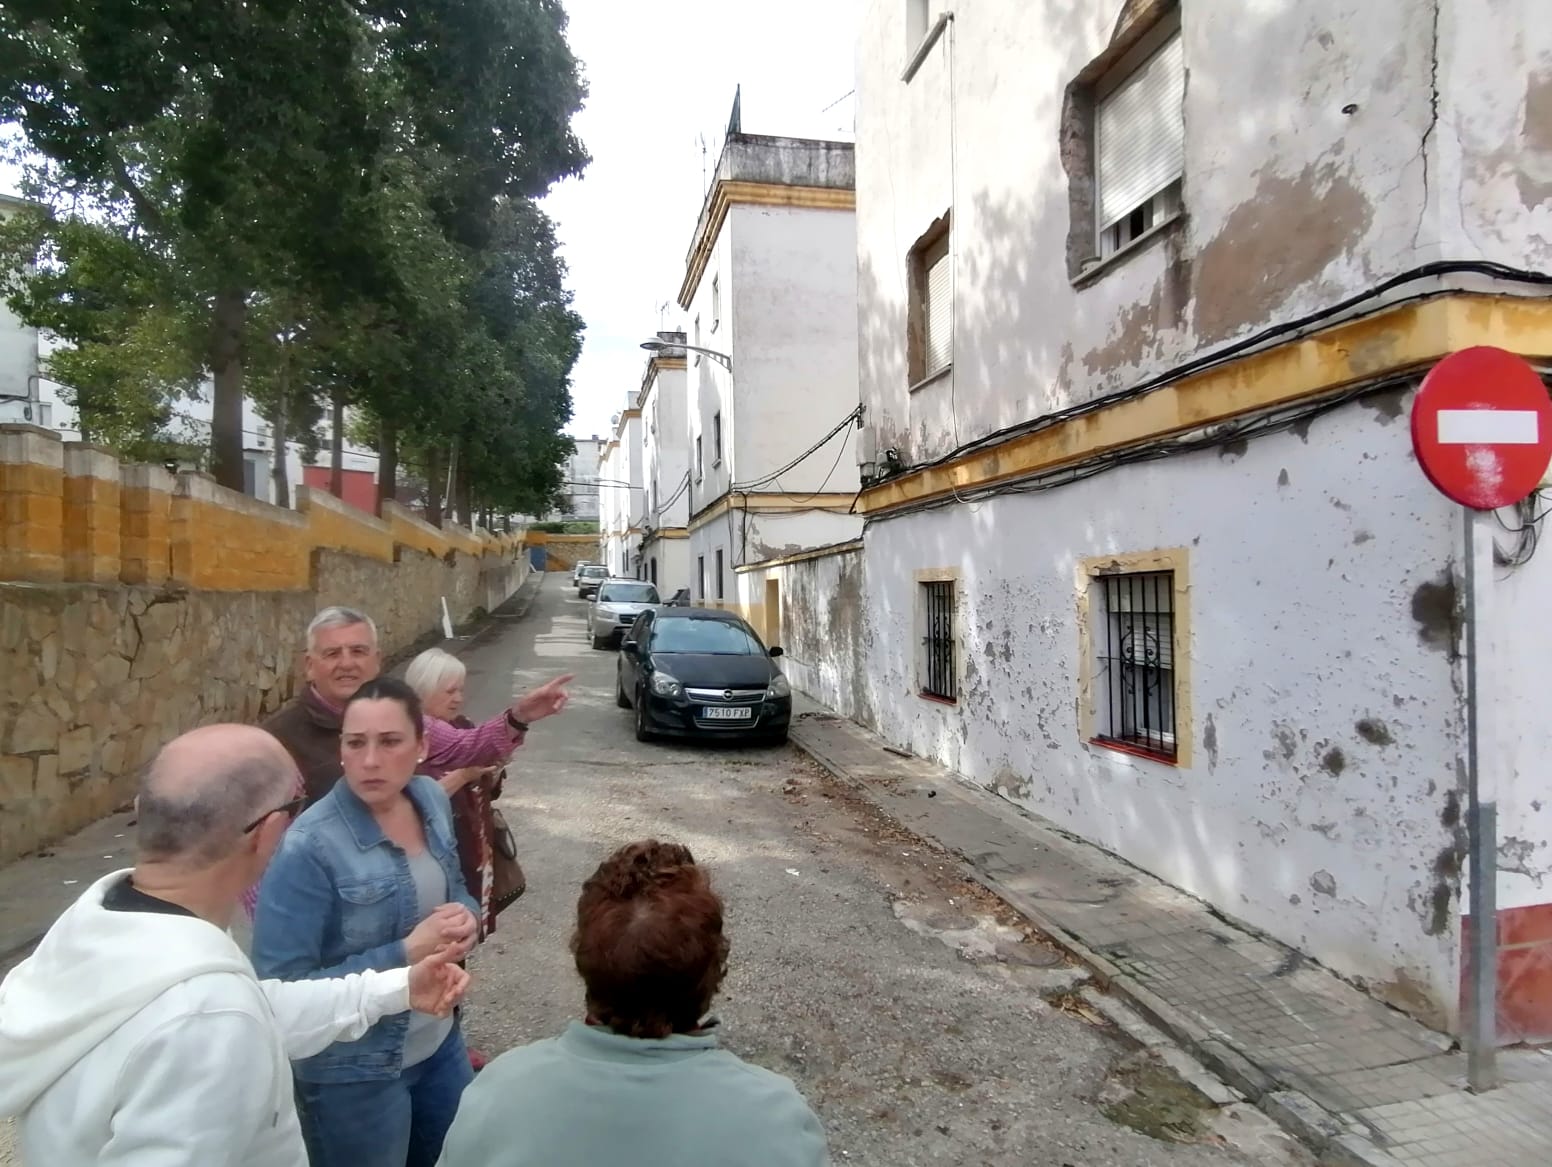 Grietas en bloques calle Andalucía. El PSOE de Algeciras critica el estado de los bloques de la calle Andalucía en La Piñera